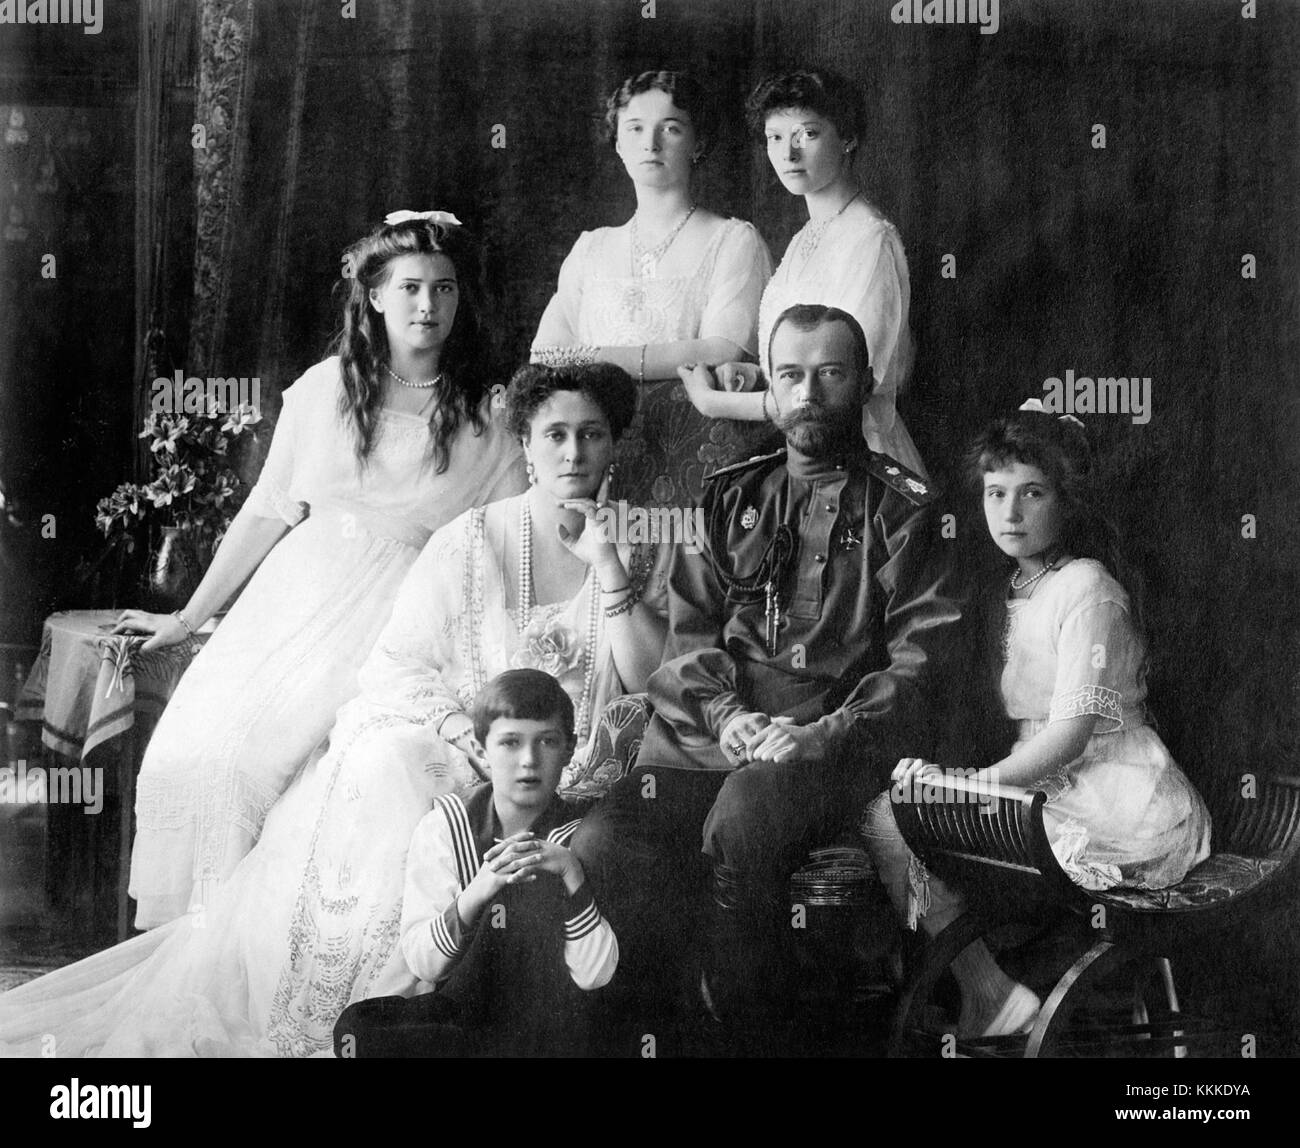 La photo montre les membres des Romanov, la dernière famille royale de Russie, y compris: Assis (de gauche à droite) Marie, la reine Alexandra, le tsar Nicholas II, Anastasia, Alexei (devant), et debout (de gauche à droite), Olga et Tatiana. (Source : projet Flickr Commons, 2010) famille Nicholas II de Russie ca. 1914 Banque D'Images